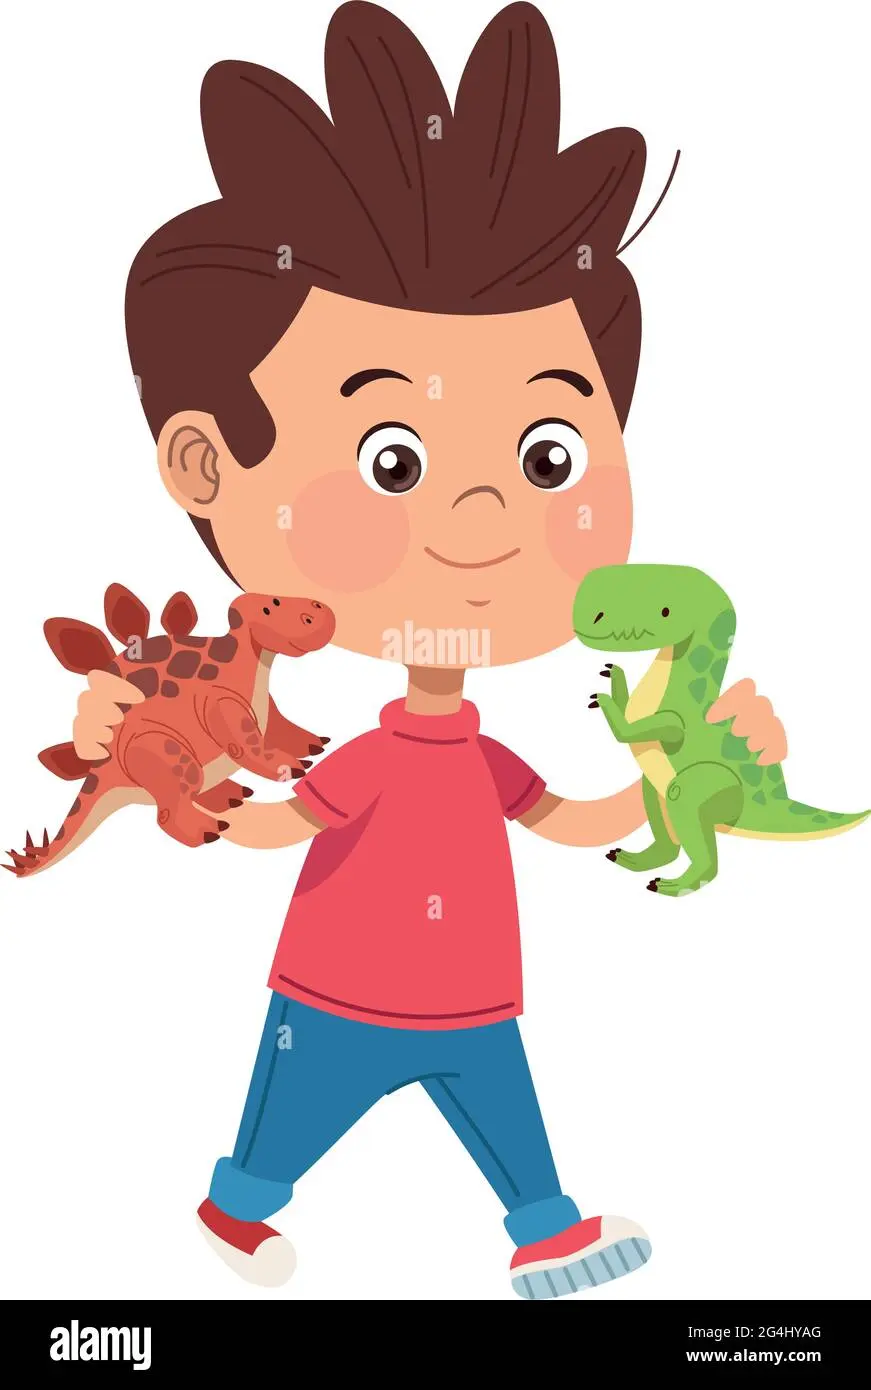 niños jugando con dinosaurios - Qué significa que los niños jueguen con dinosaurios